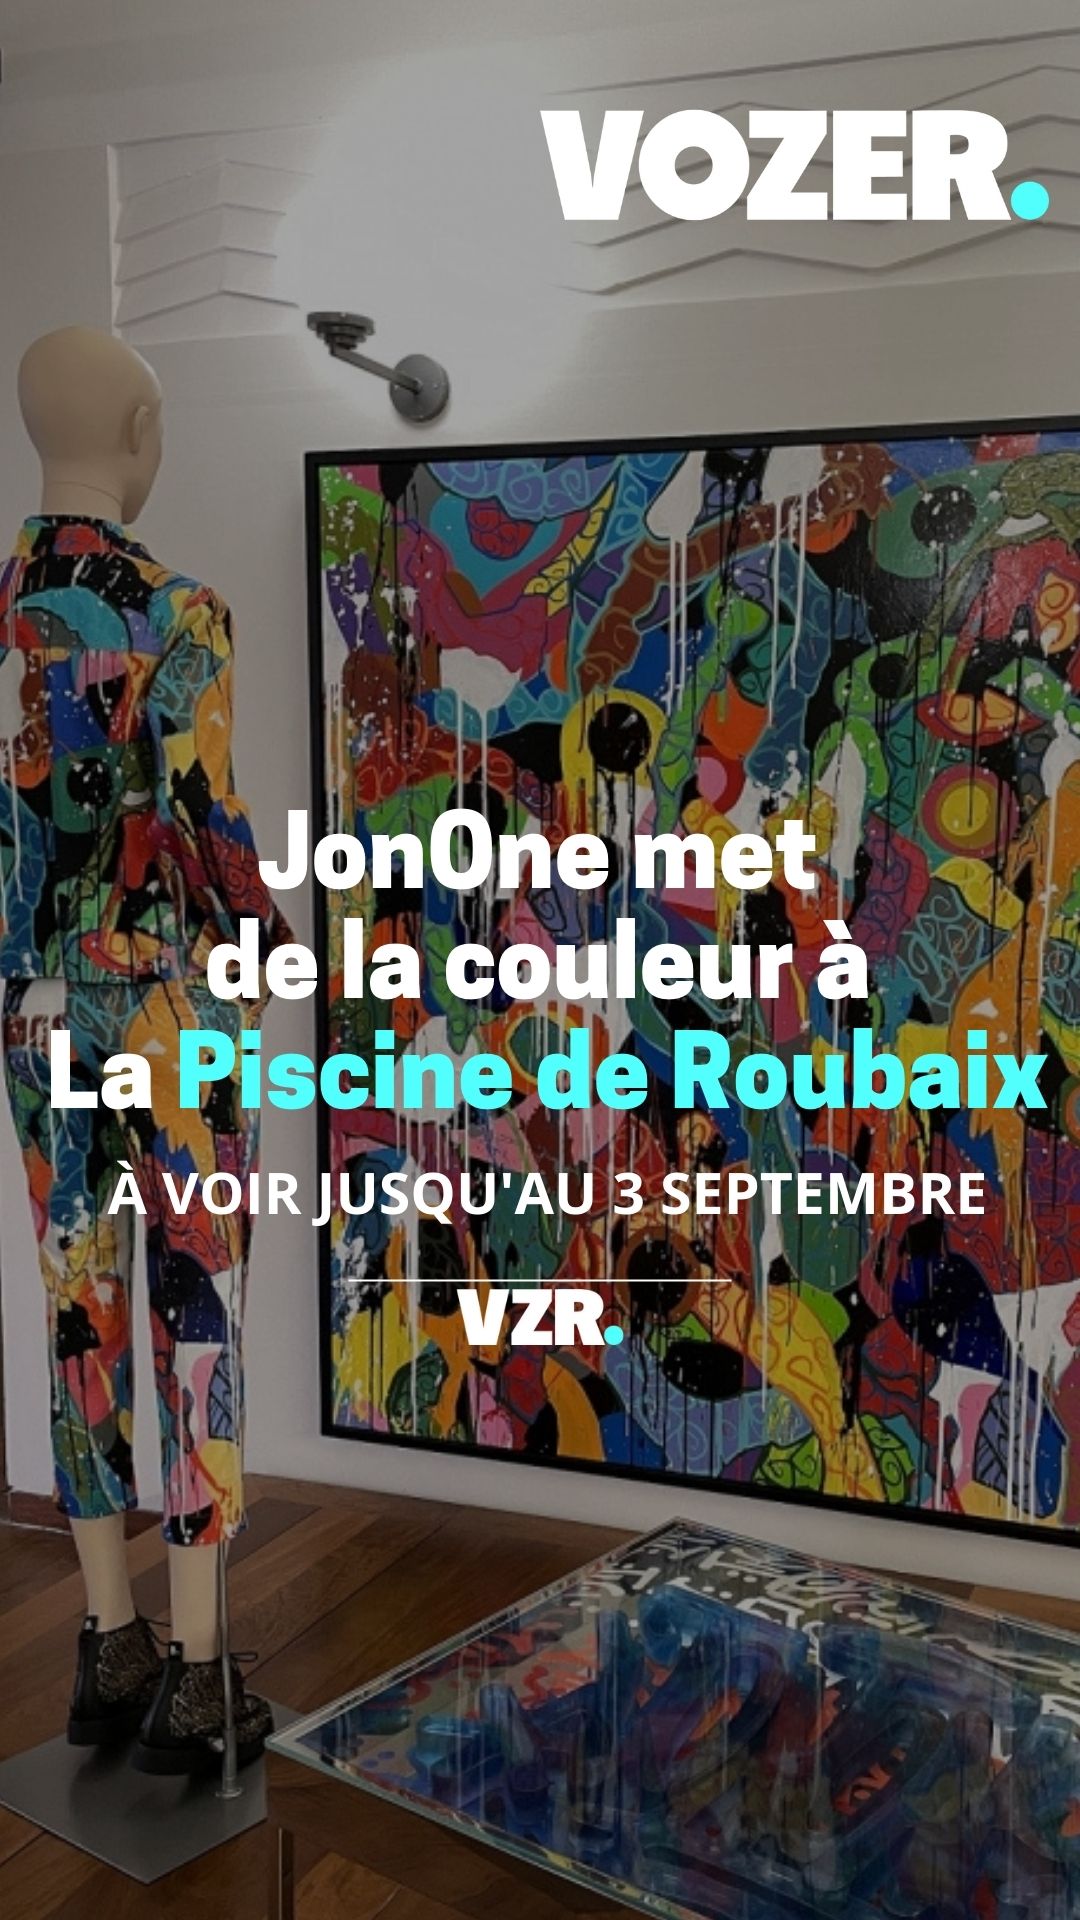 Cet été, le street artist JonOne met de la couleur à La Piscine de Roubaix